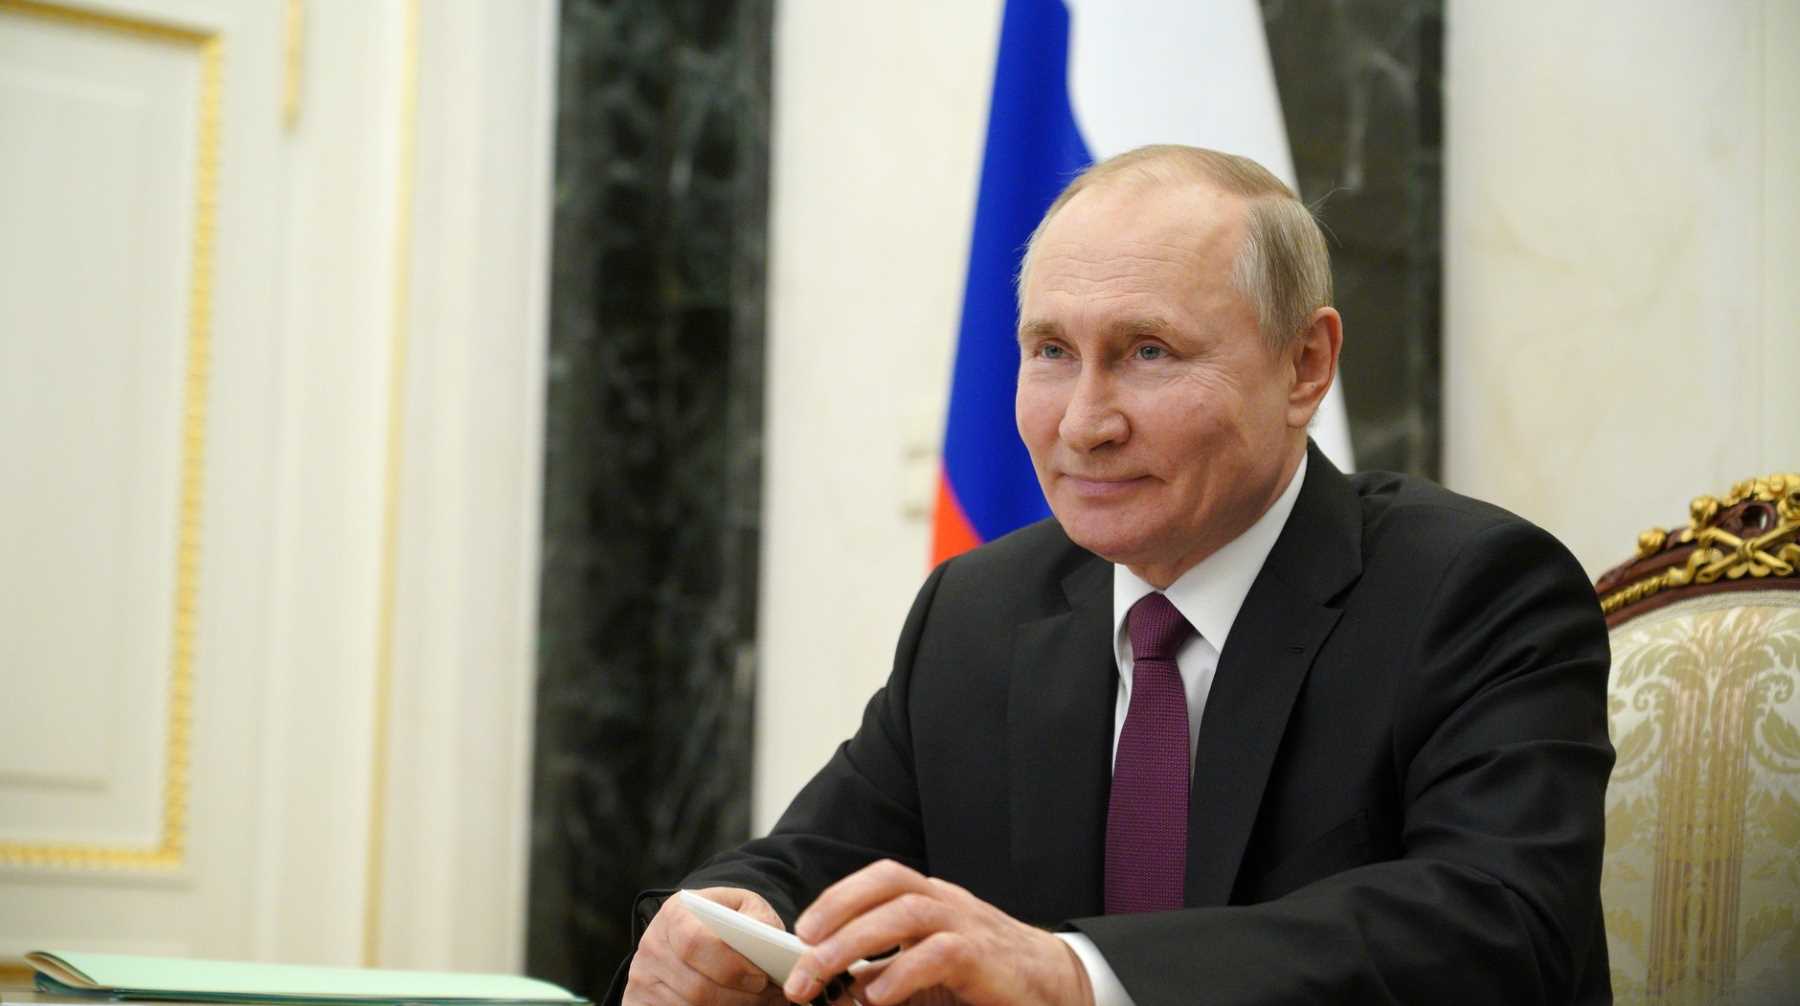 Глава государства также одобрил документ о «гаражной амнистии», который начнет действовать с 1 сентября Фото: © Global Look Press / Kremlin Pool